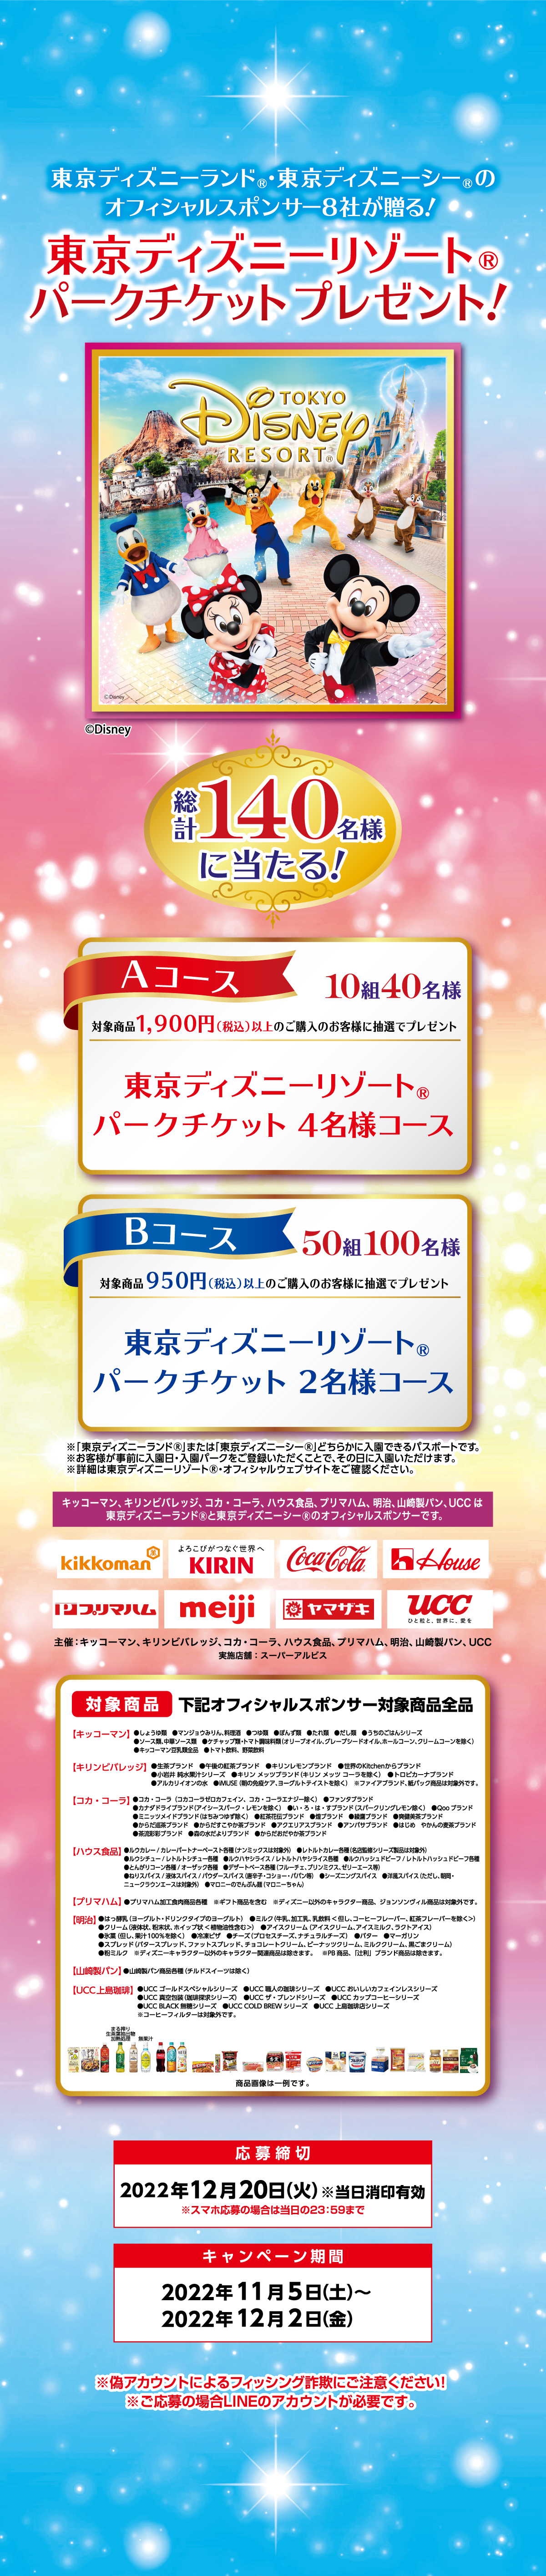 東京ディズニーランド 東京ディズニーシーのオフィシャルスポンサー8社が贈る 東京ディズニーリゾート パークチケット プレゼント